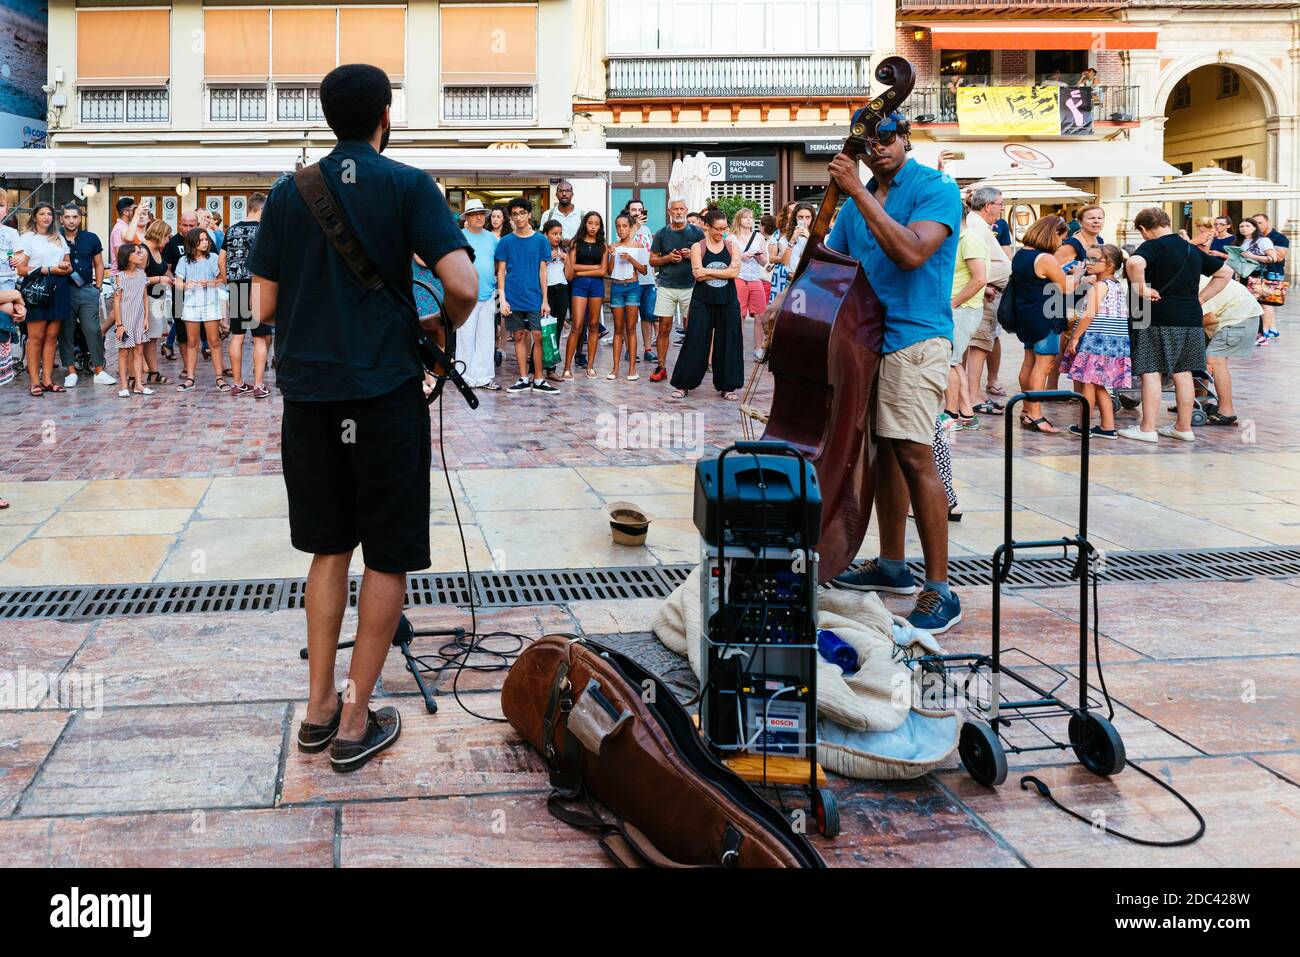 Spectacle musical, musique de rue. Plaza de la Constitución - place de la Constitution - dans le centre historique de Málaga, Andalousie, Espagne, Europe Banque D'Images